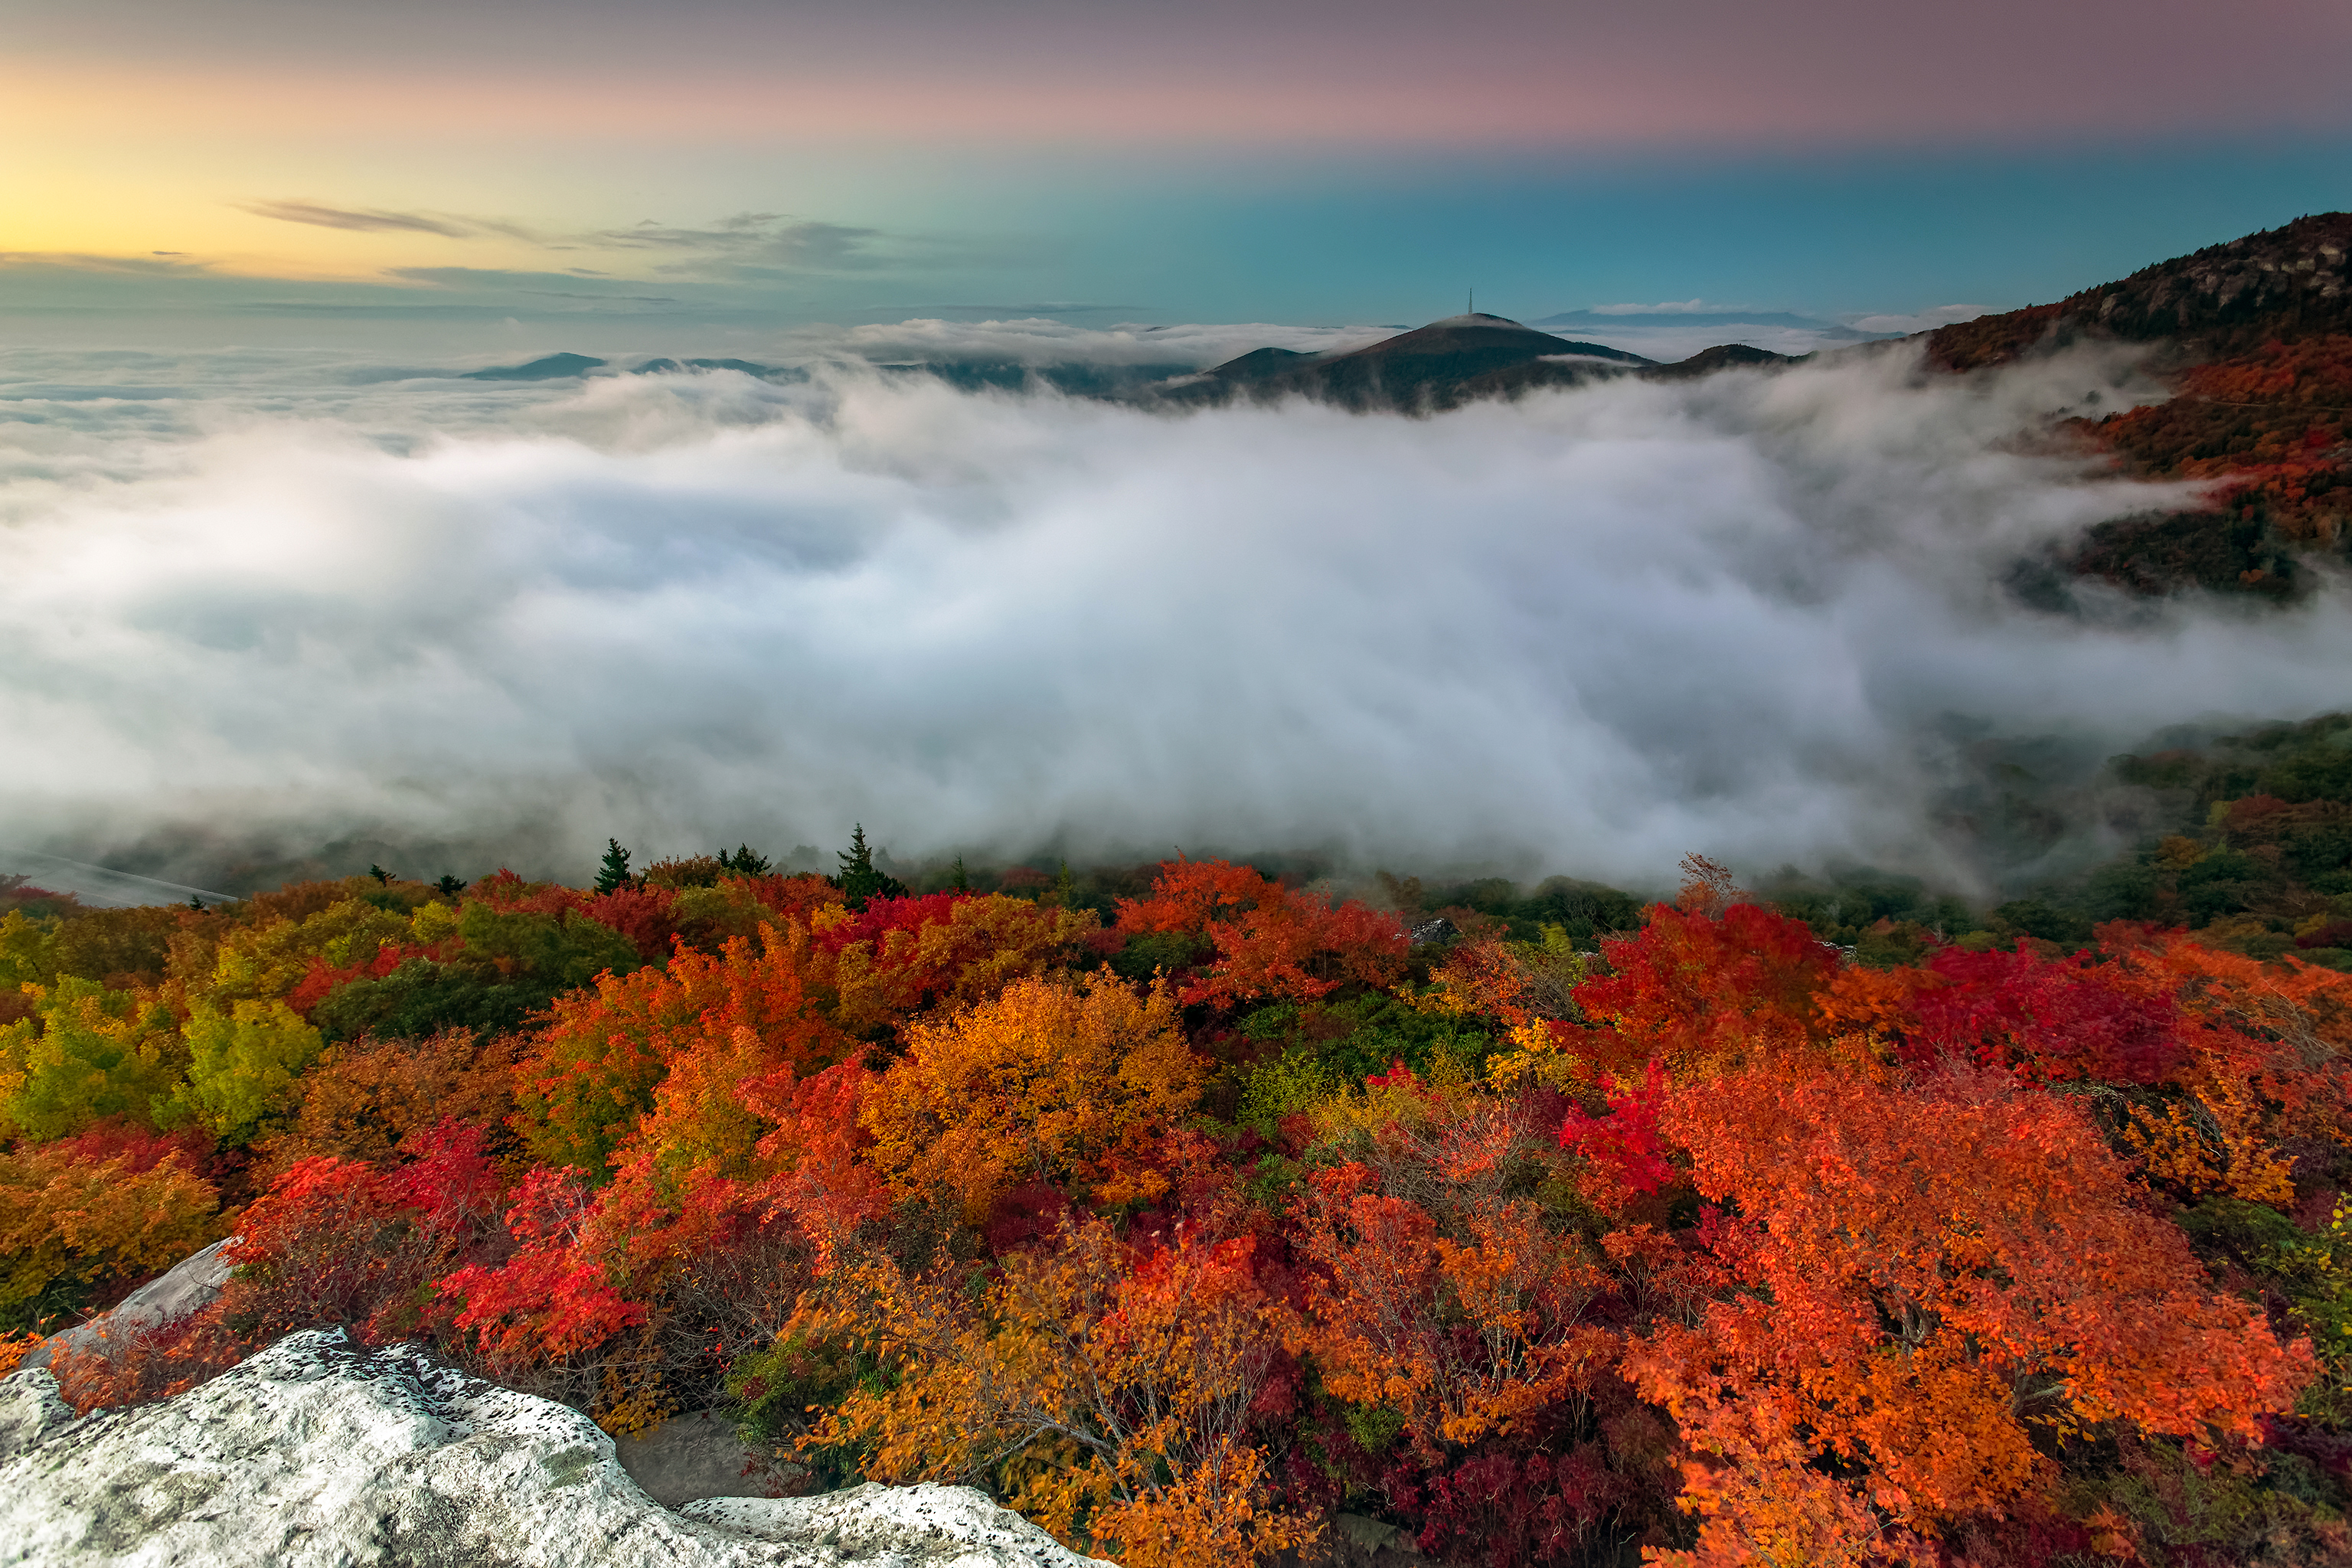 Скачать обои бесплатно Пейзаж, Природа, Осень, Горизонт, Туман, Земля/природа картинка на рабочий стол ПК